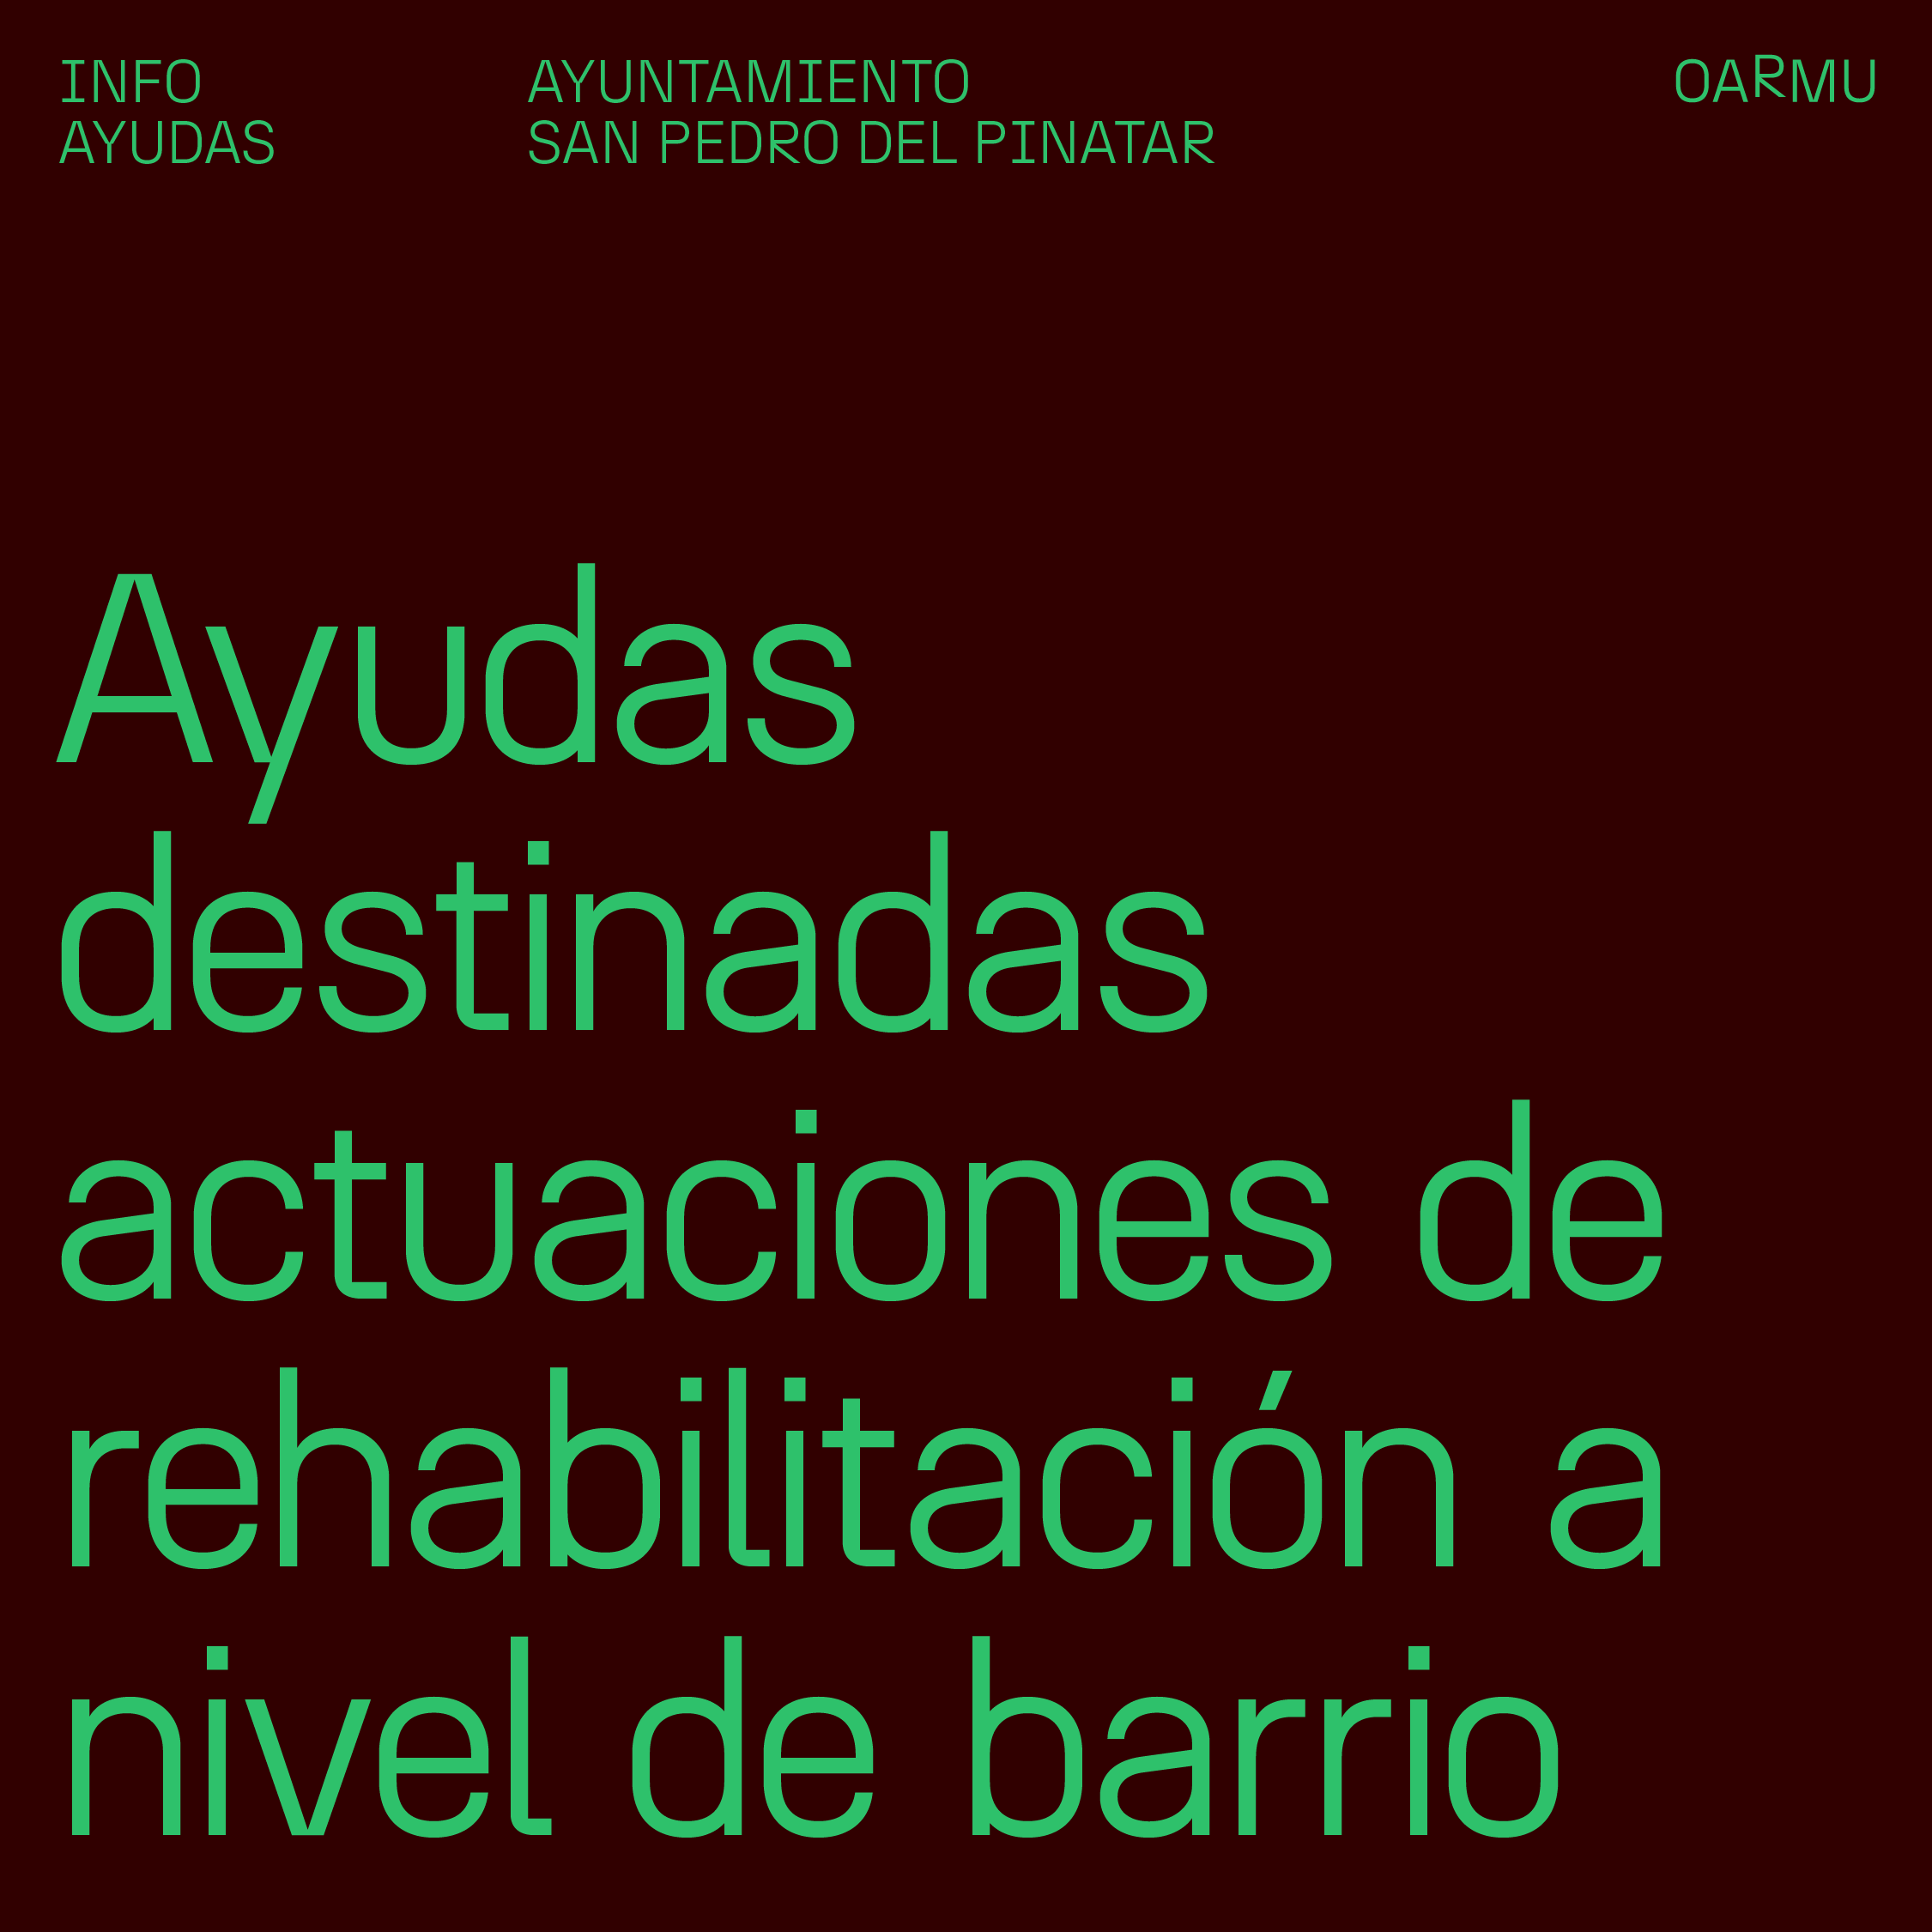 Decreto número 256/2022 Ayudas destinadas a las actuaciones de rehabilitación a nivel de barrio en San Pedro del Pinatar